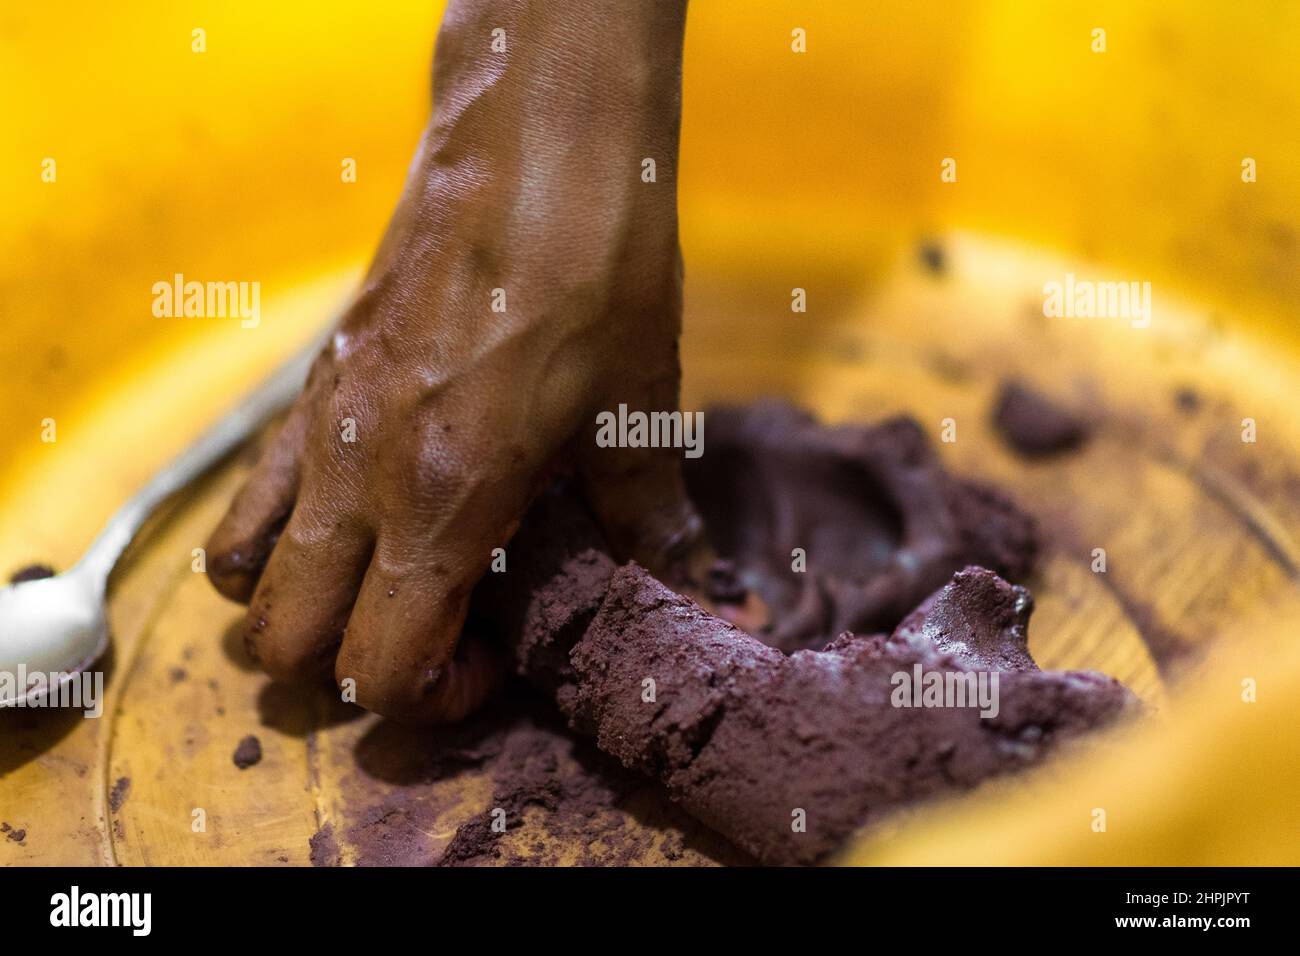 Una donna afro-colombiana inginocchia la pasta di cacao crudo prima di stendersi le palle di cioccolato nella lavorazione artigianale del cioccolato a Cuernavaca, Colombia. Foto Stock